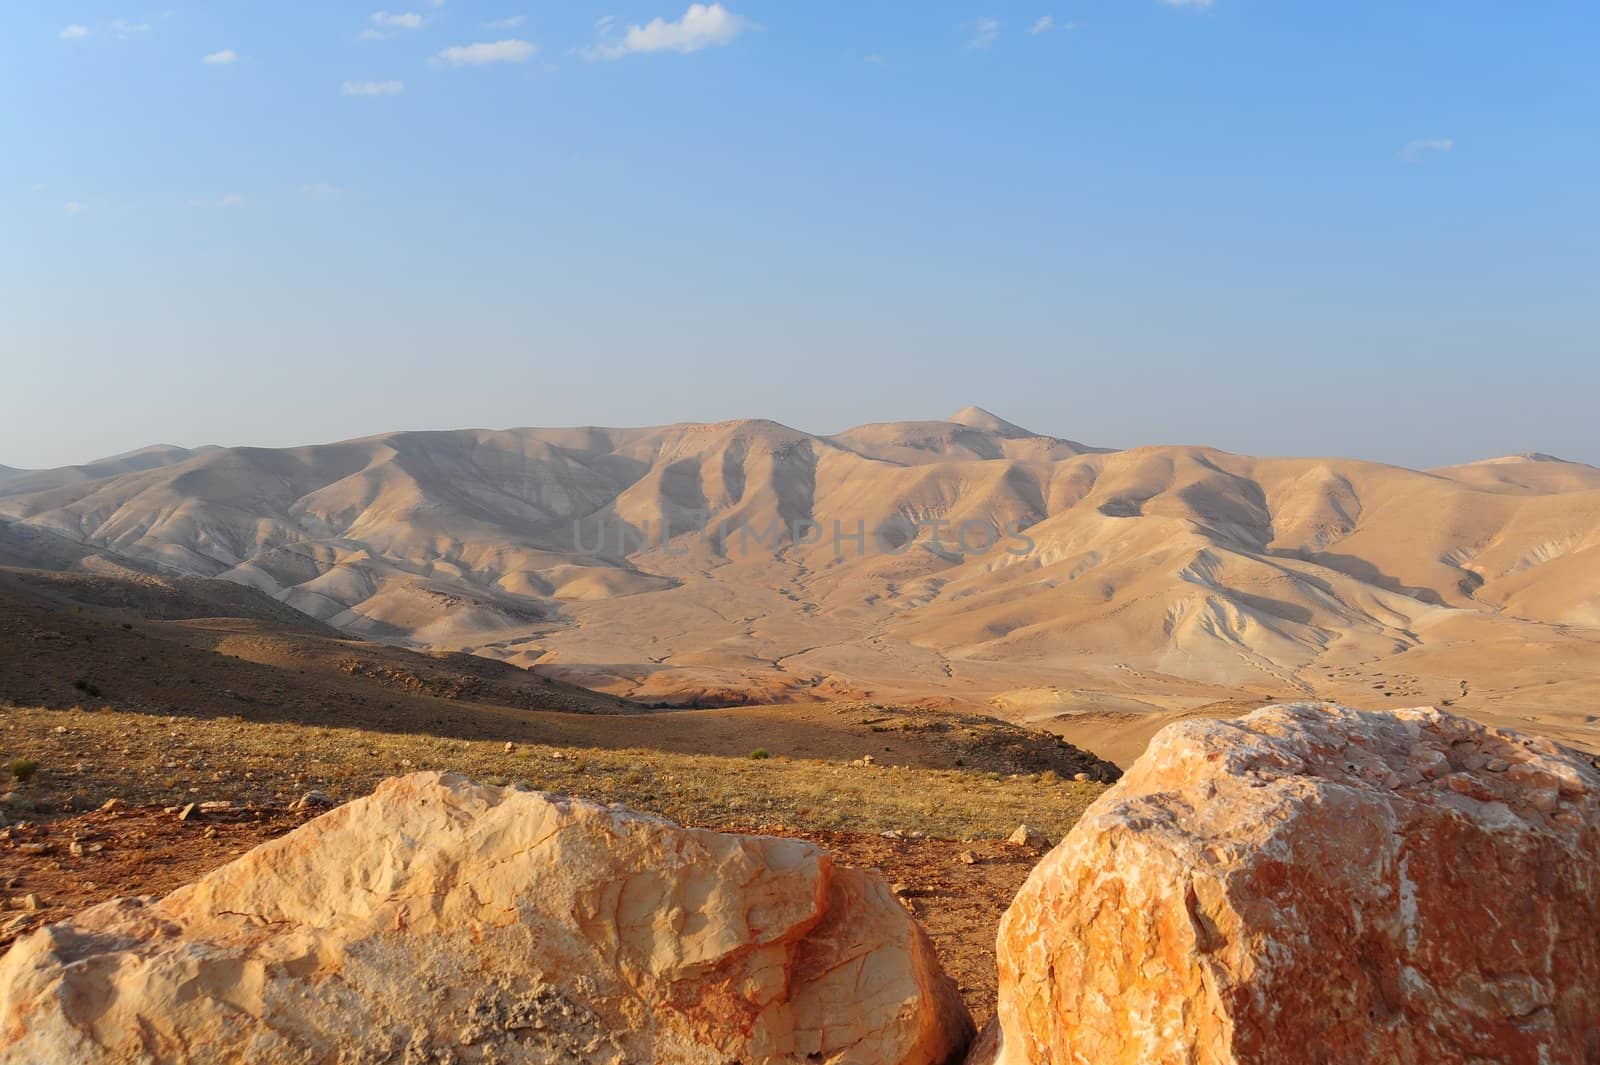 Landscape Of Judea Mountains Near Dead Sea. Sunset